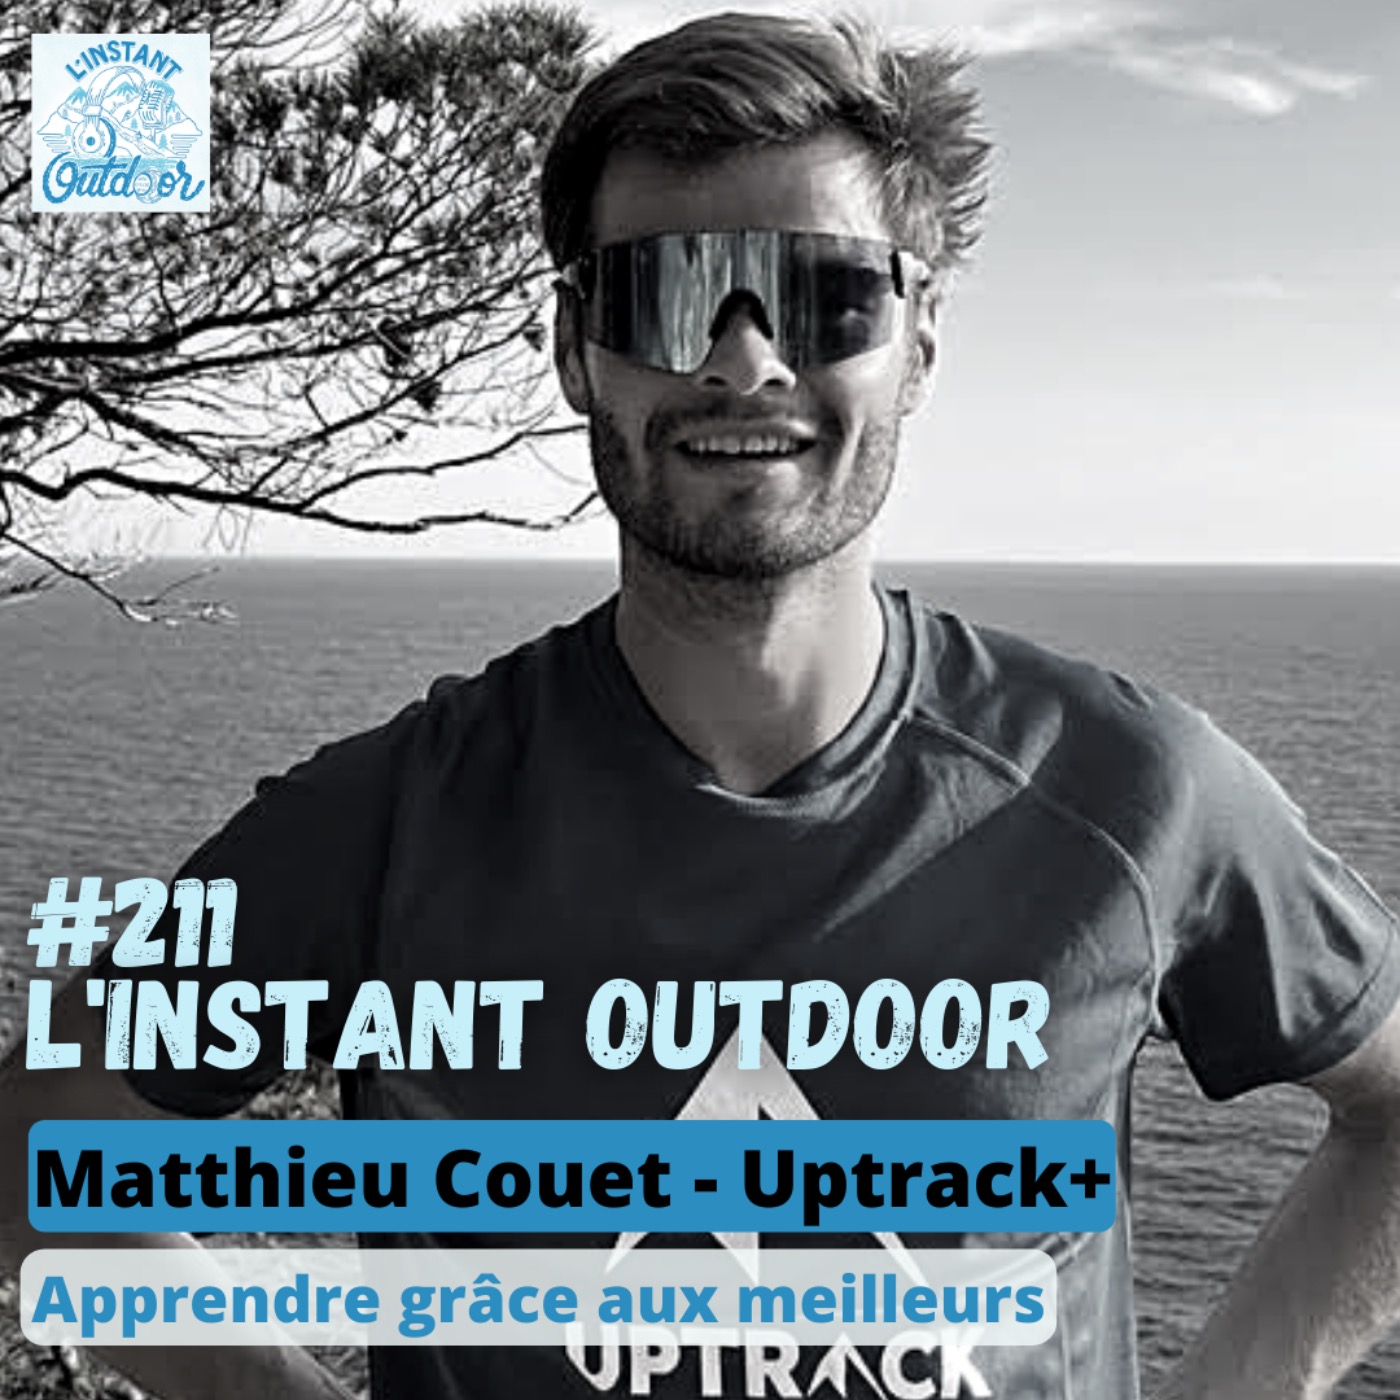 Matthieu Couet - Apprendre grâce aux meilleurs